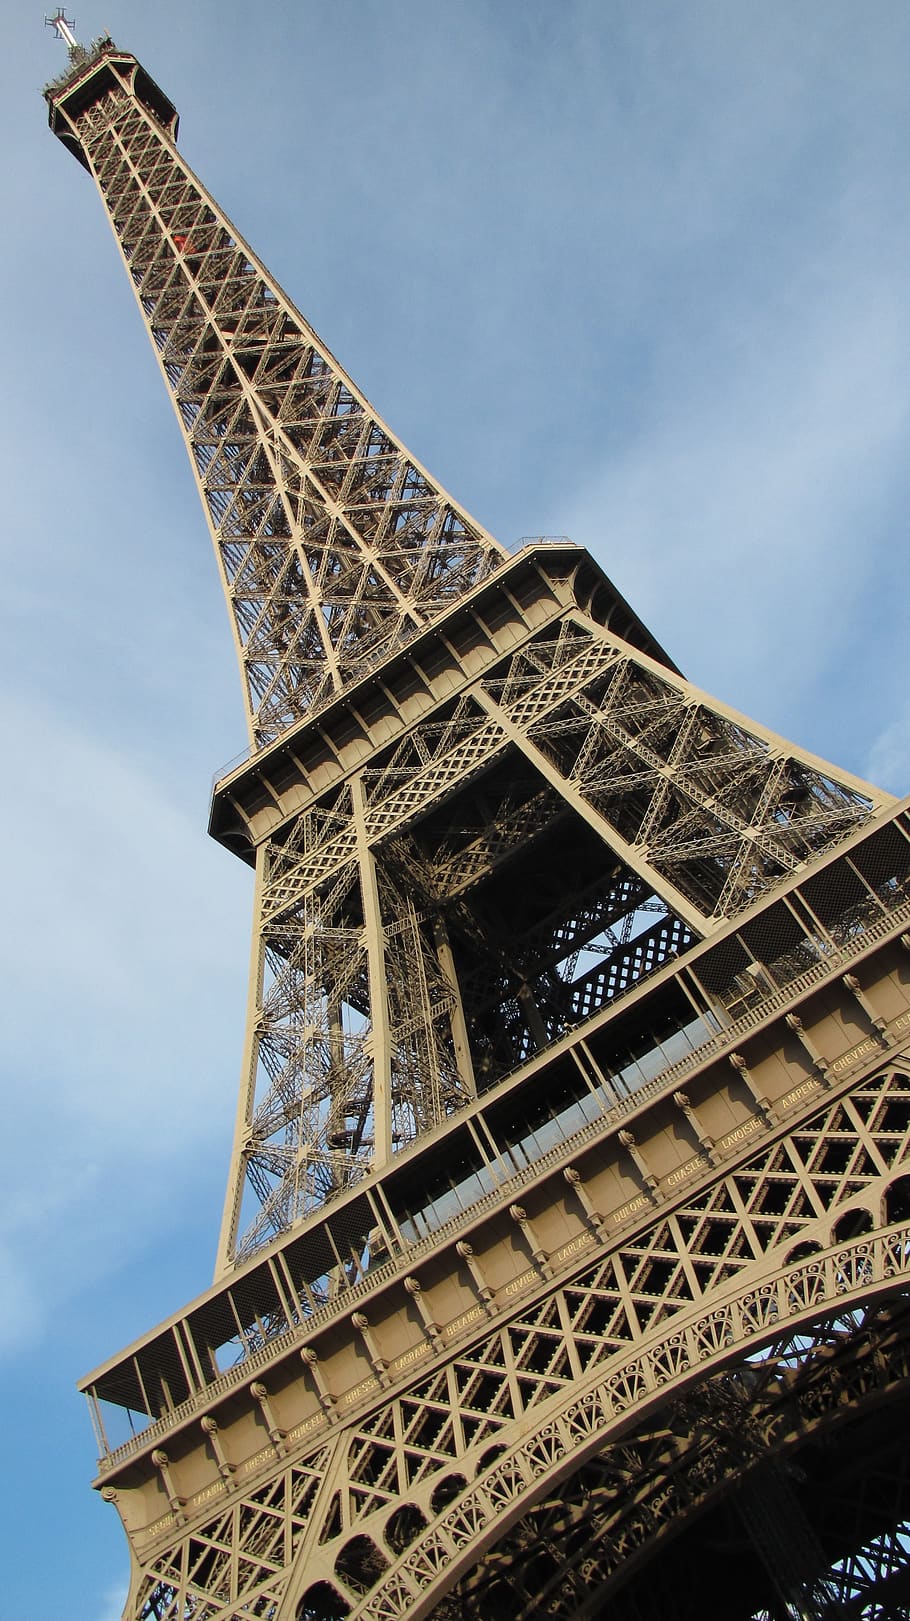 eiffeltower, paris, france, europe, tourism, city, landmark, architecture, tower, cityscape